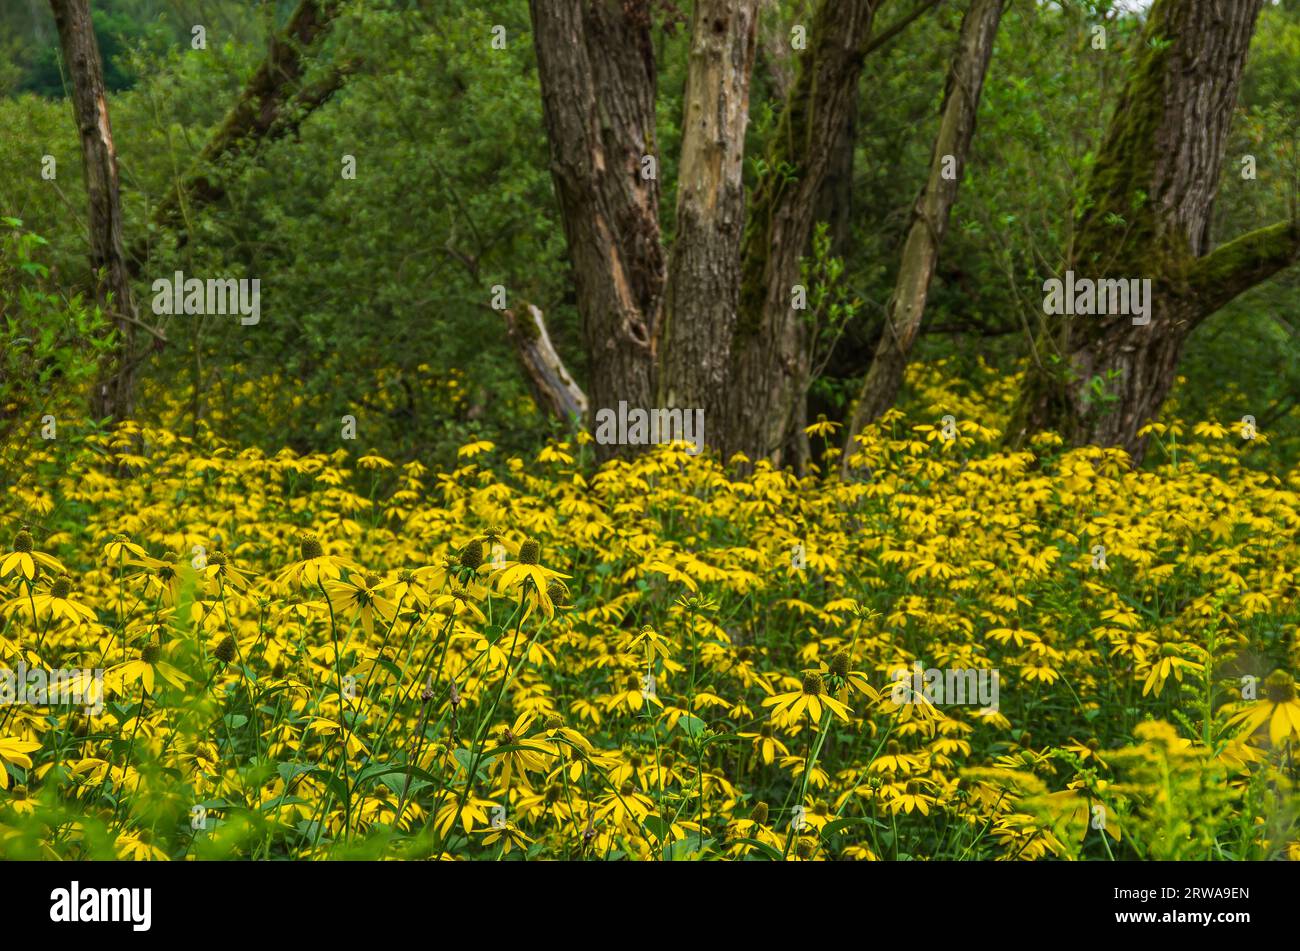 Vegetation der Gelbblümchen, Echinacea, im Naturschutzgebiet Königsbrücker Heide, Königsbrück, Westlausitz, Sachsen, Deutschland. Stockfoto